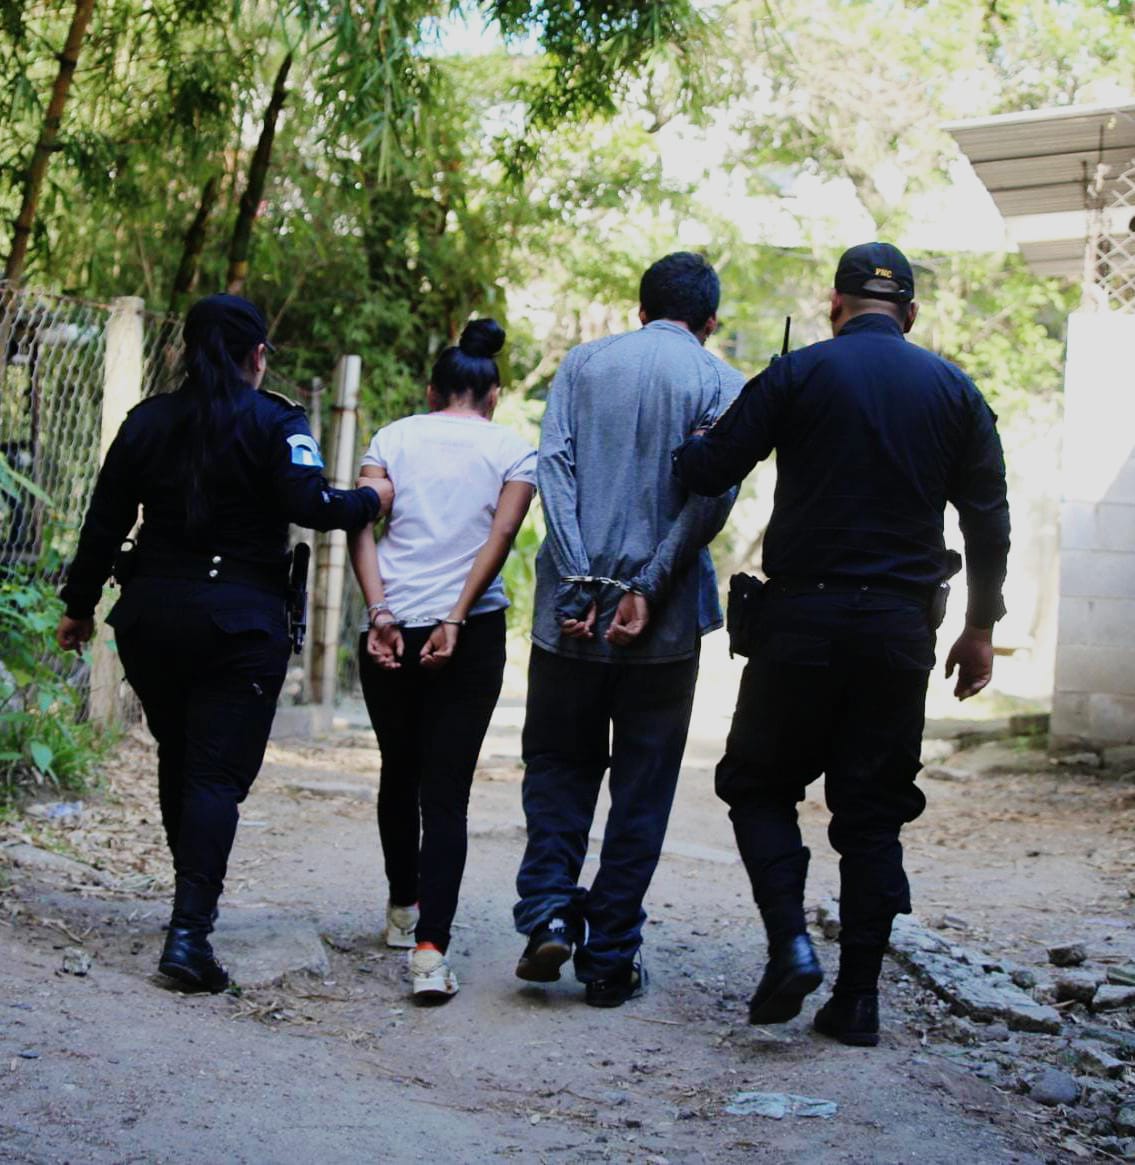 La Policía Nacional Civil detuvo a tres presuntos sicarios de la pandilla del Barrio 18 en la colonia El Mezquital, zona 12 de Villa Nueva, Guatemala. Un adolescente entre los arrestados. Foto PNC.